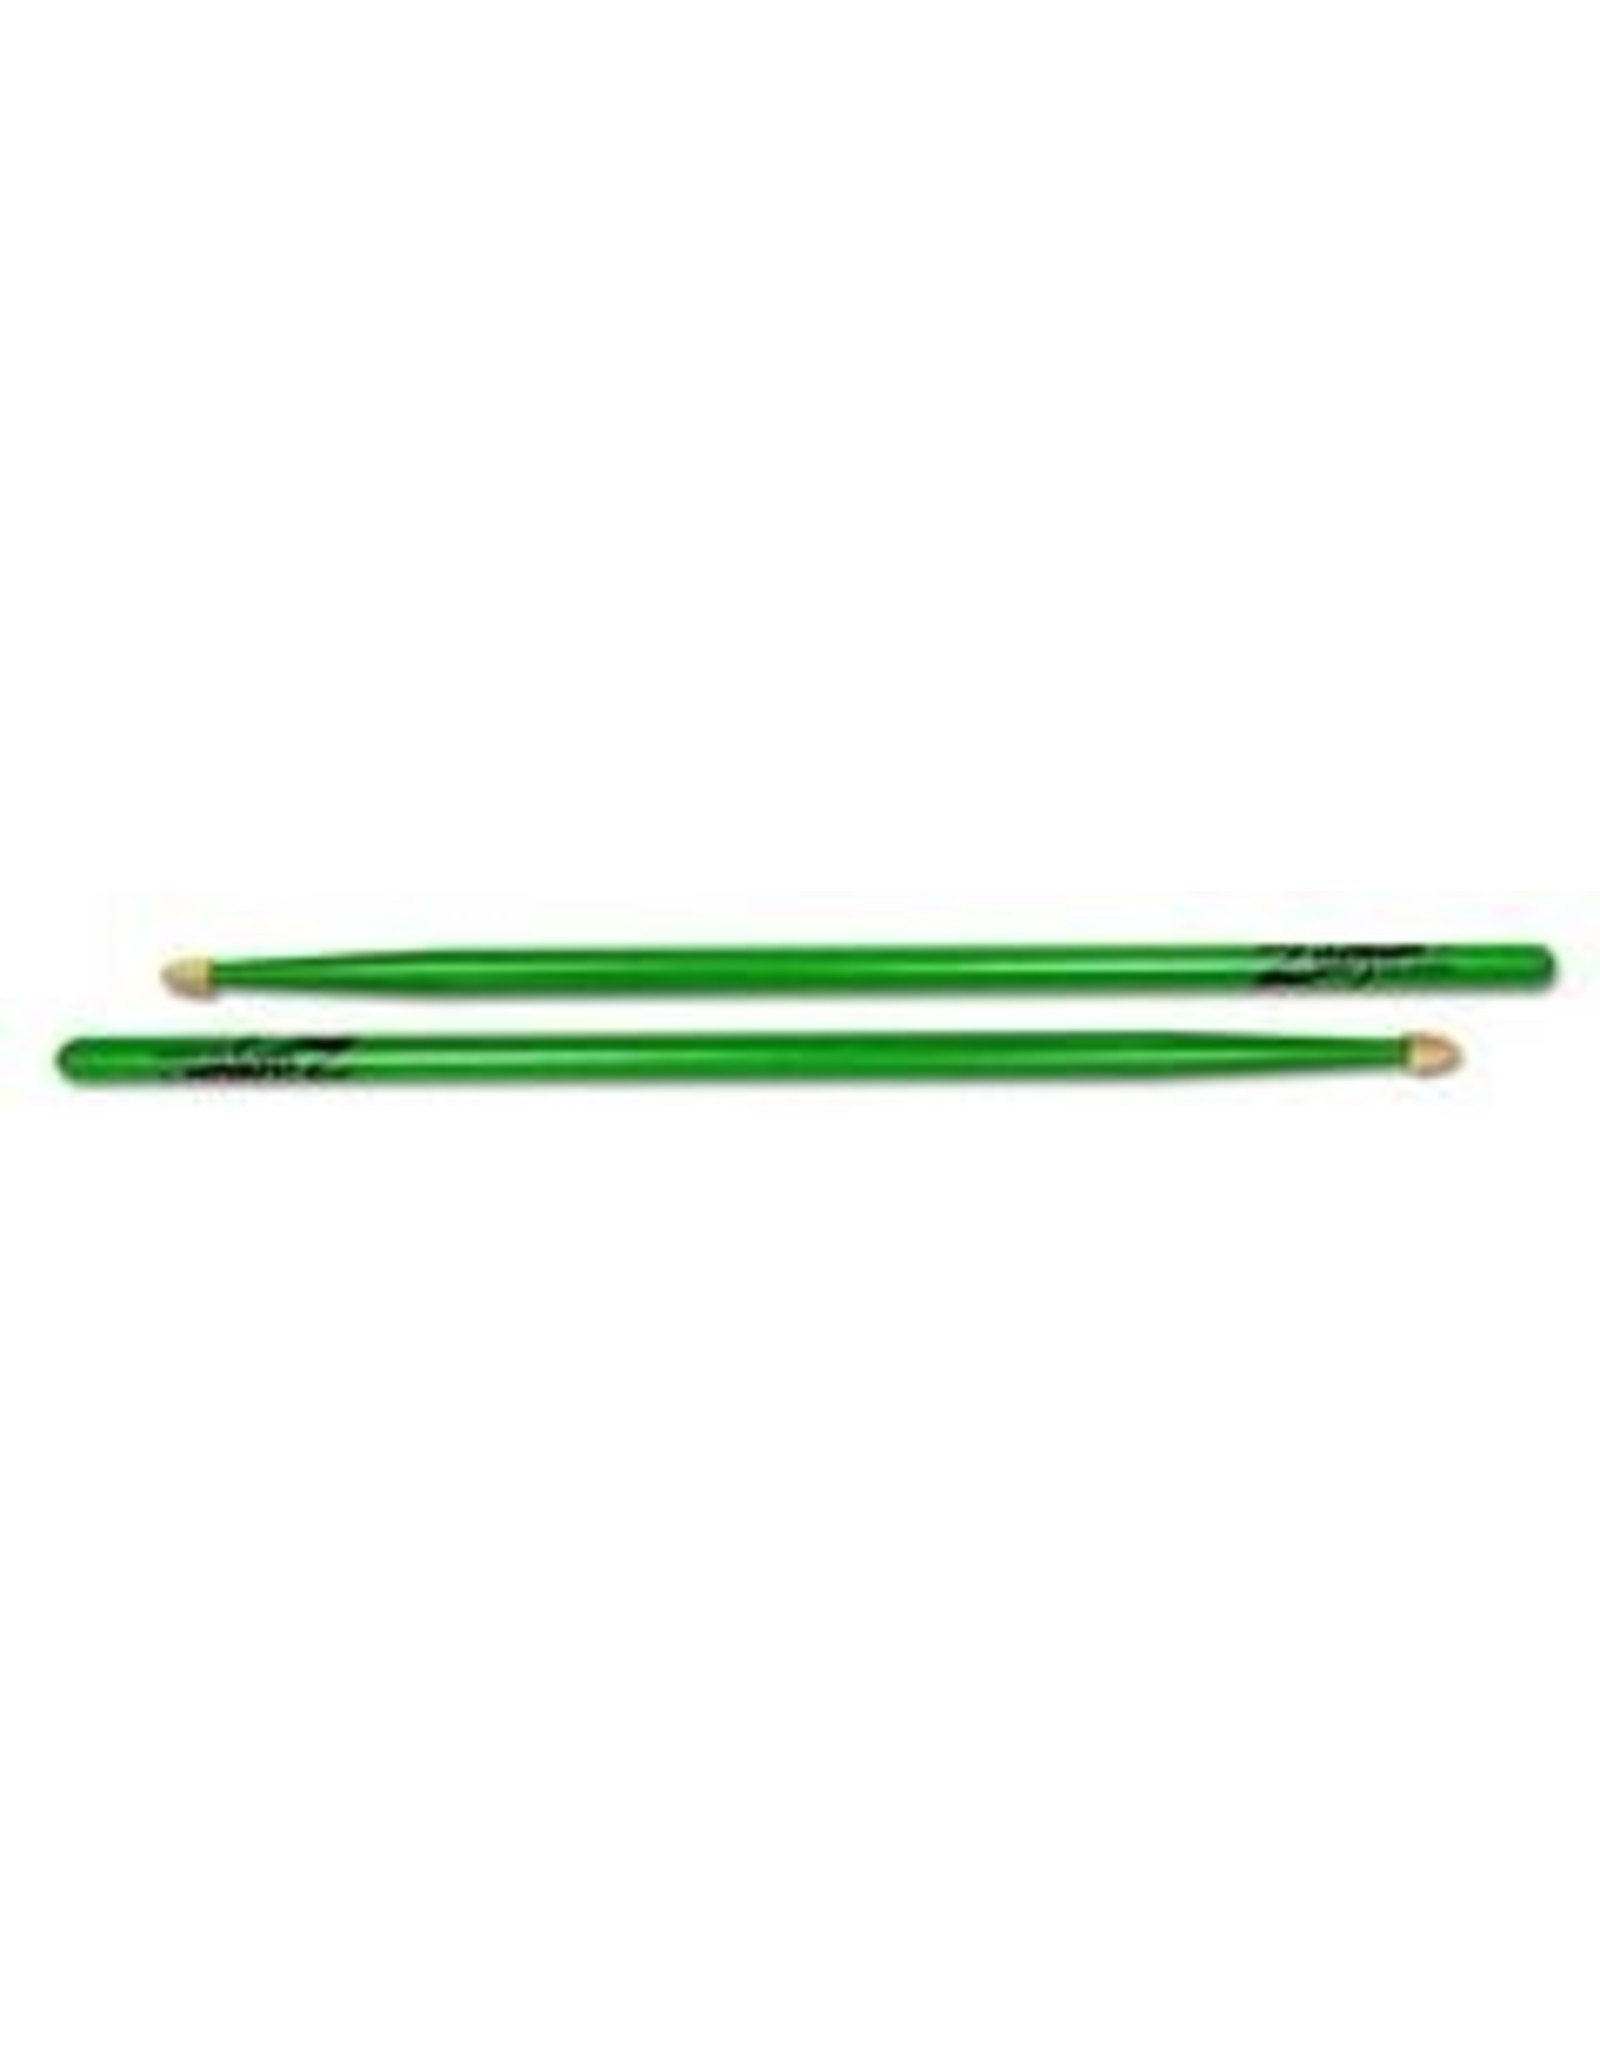 Zildjian 5ACWDGG Drumsticks, Hickory Wood Tip series, 5A Acorn, neon green